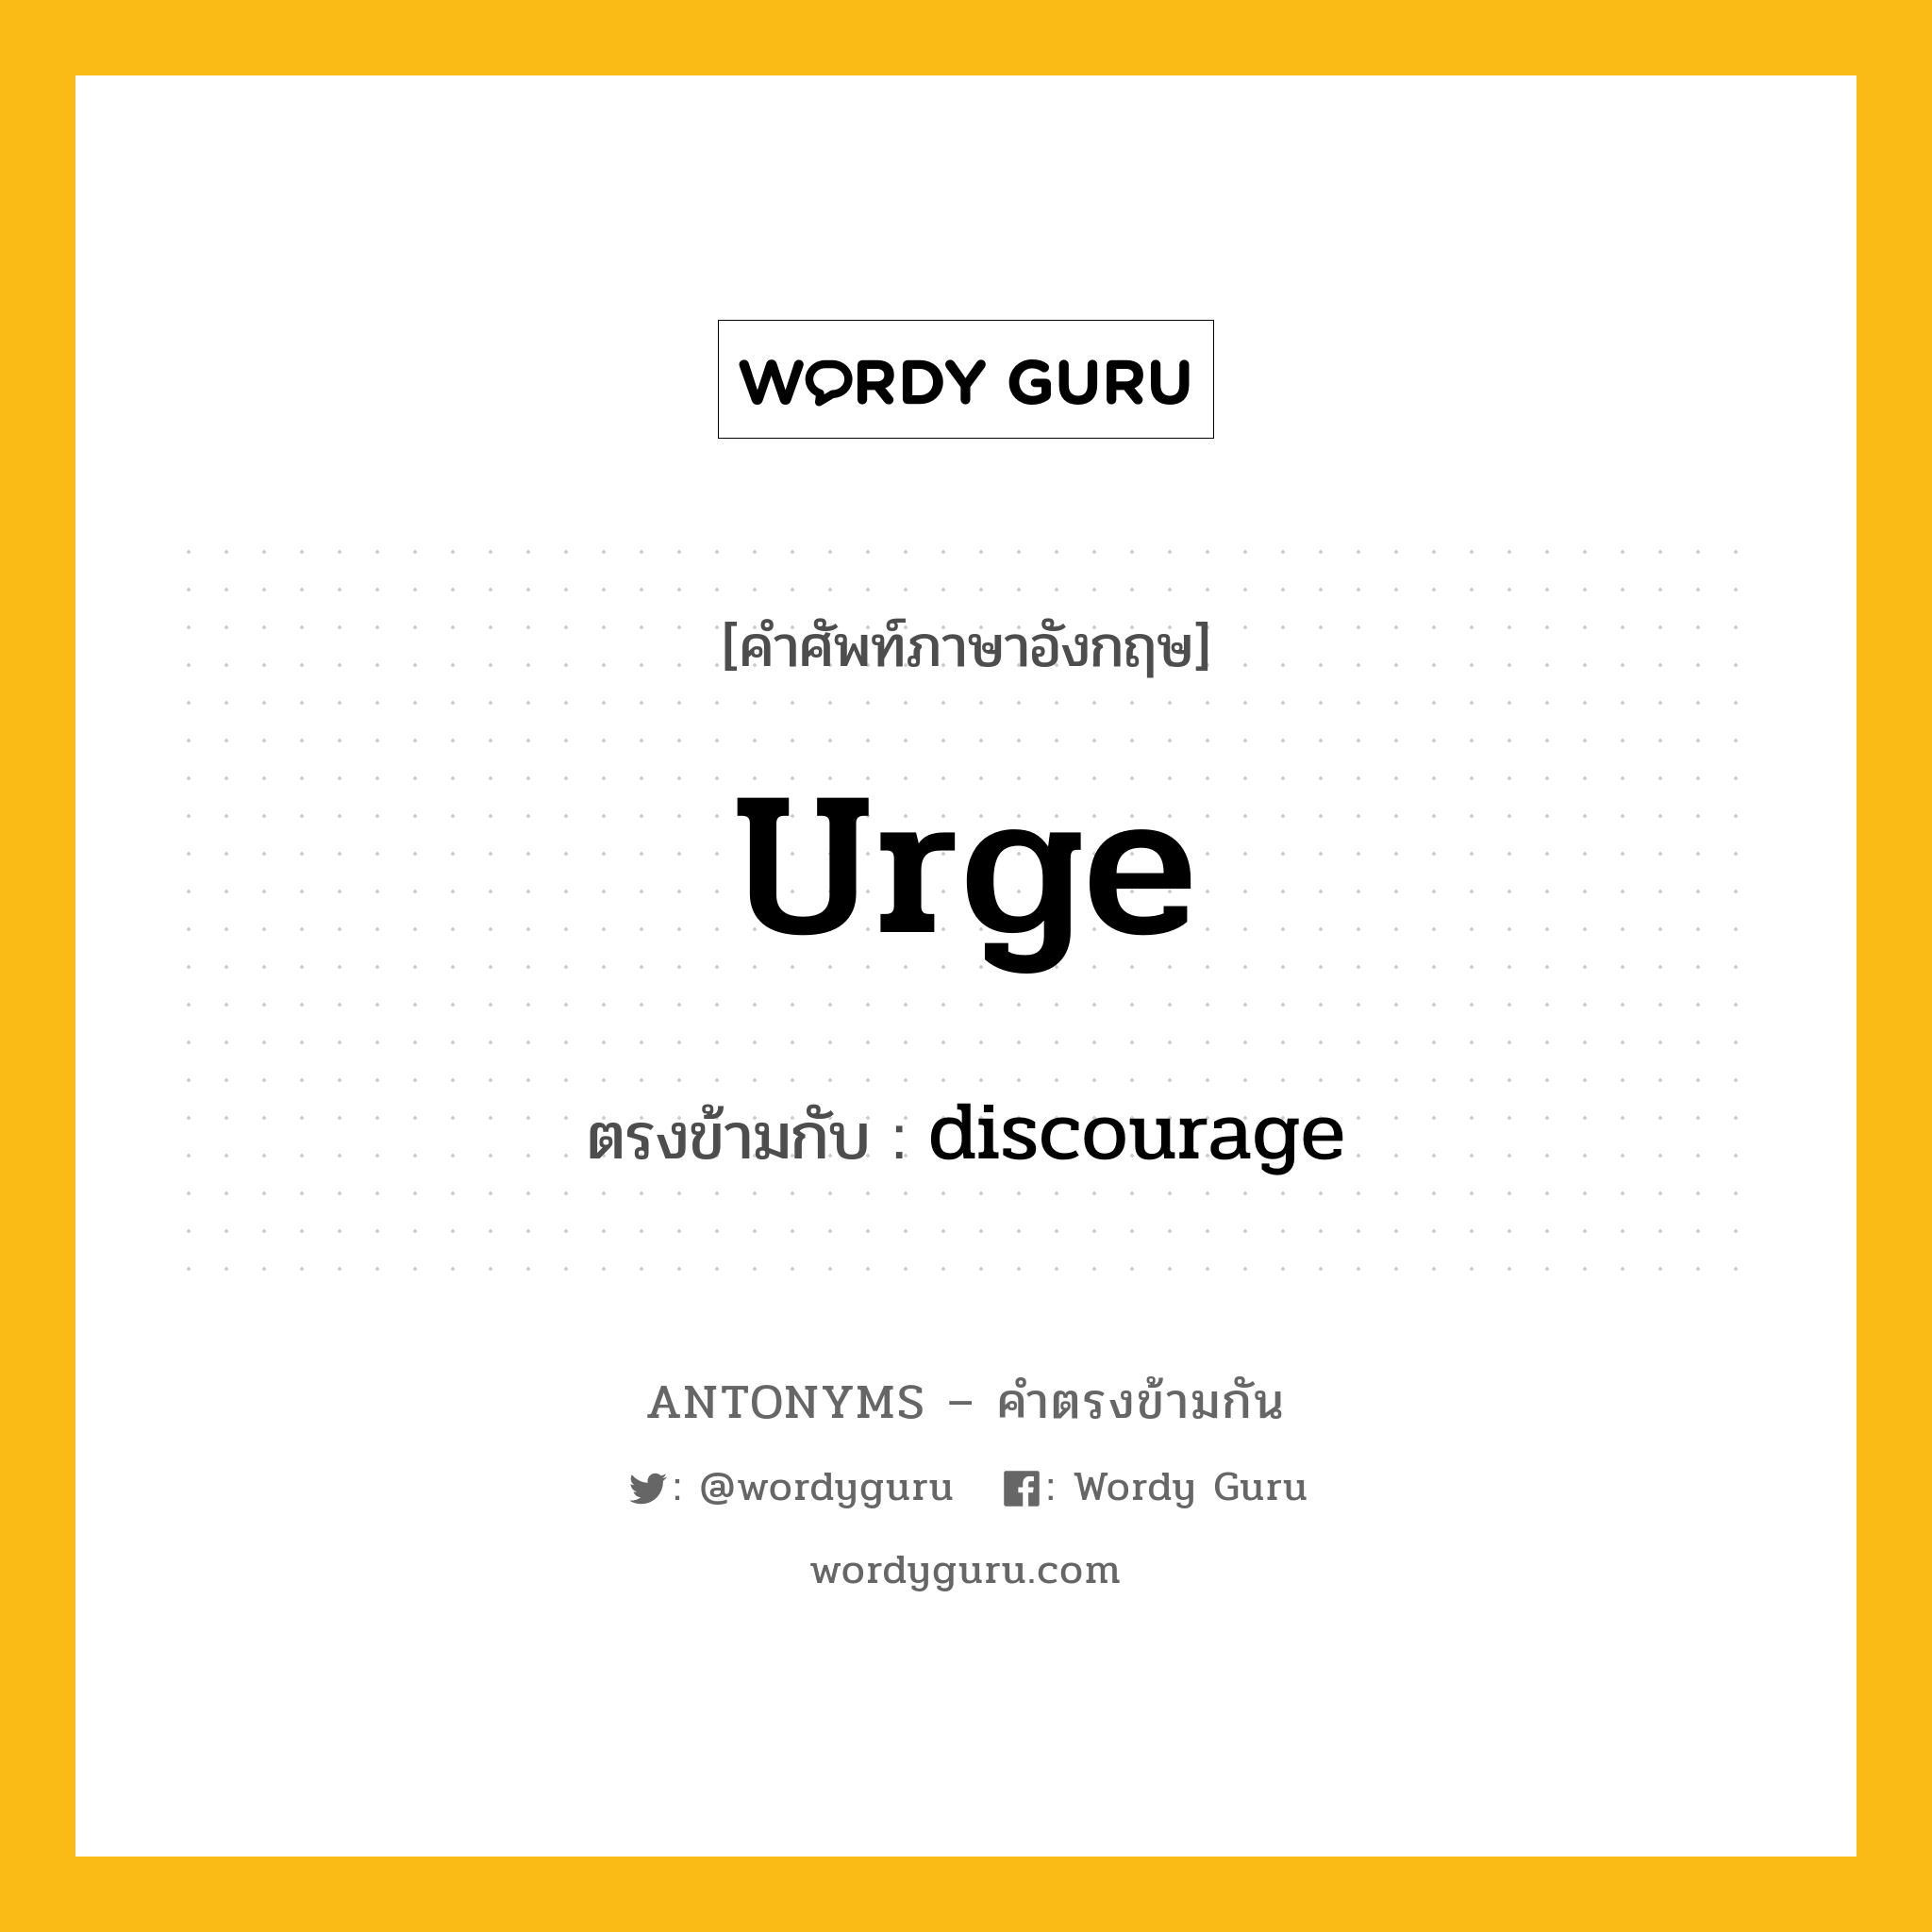 urge เป็นคำตรงข้ามกับคำไหนบ้าง?, คำศัพท์ภาษาอังกฤษ urge ตรงข้ามกับ discourage หมวด discourage